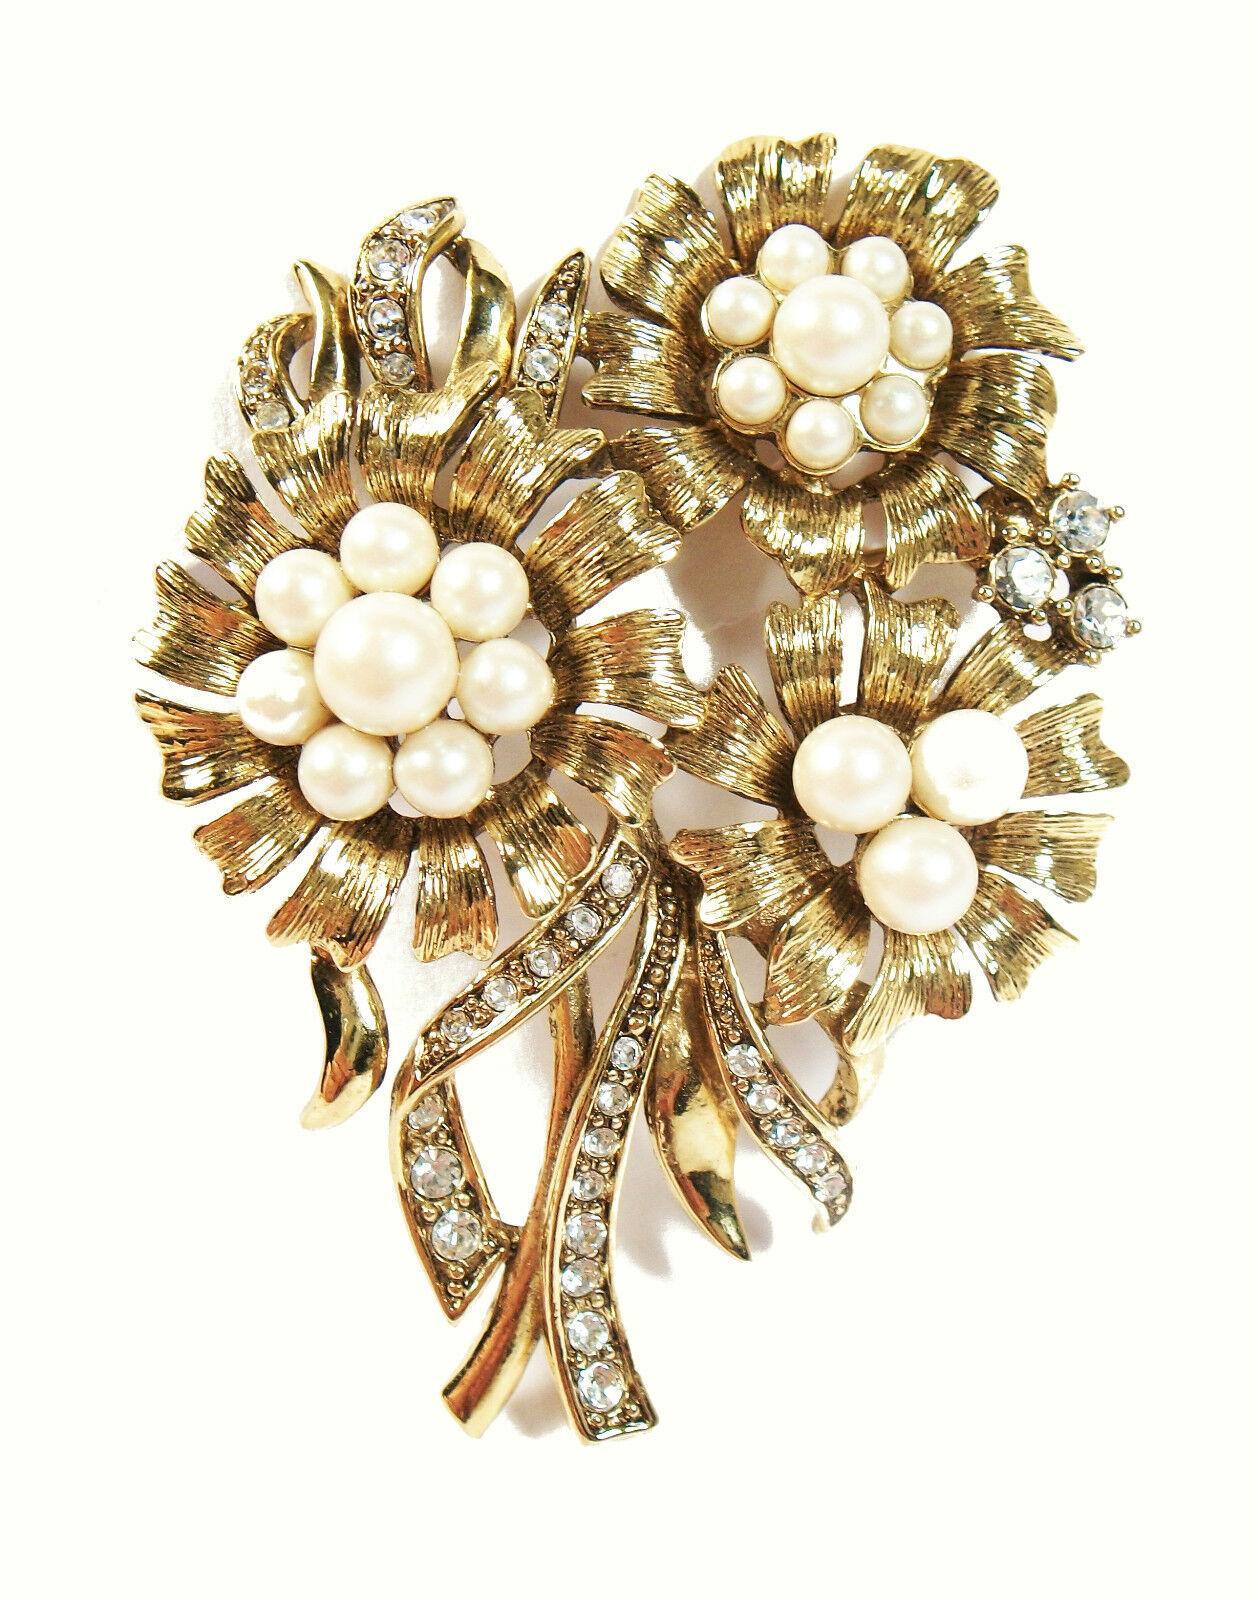 MONET - Broche fleur vintage en or - sertie de fausses perles et de strass - signée au dos - Etats-Unis - circa 1960's.

Excellent/mint état vintage - pas de perte - pas de dommage - pas de réparation - prêt à porter.

Taille - 1 3/4